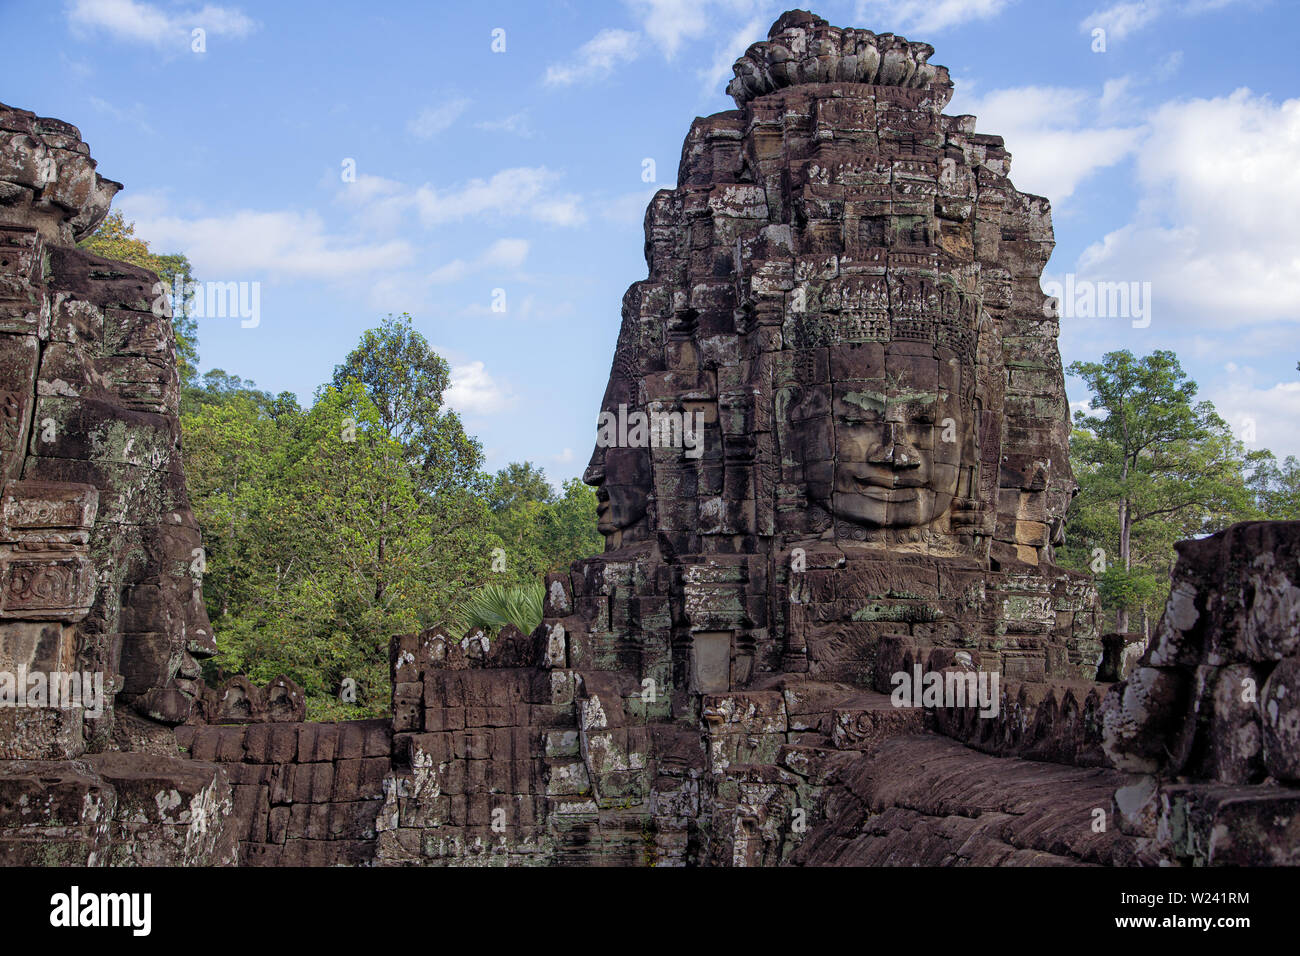 Die Ruinen von Angkor Wat, Kambodscha, eine Tempelanlage und eines der größten religiösen Bauwerke der Welt Stockfoto